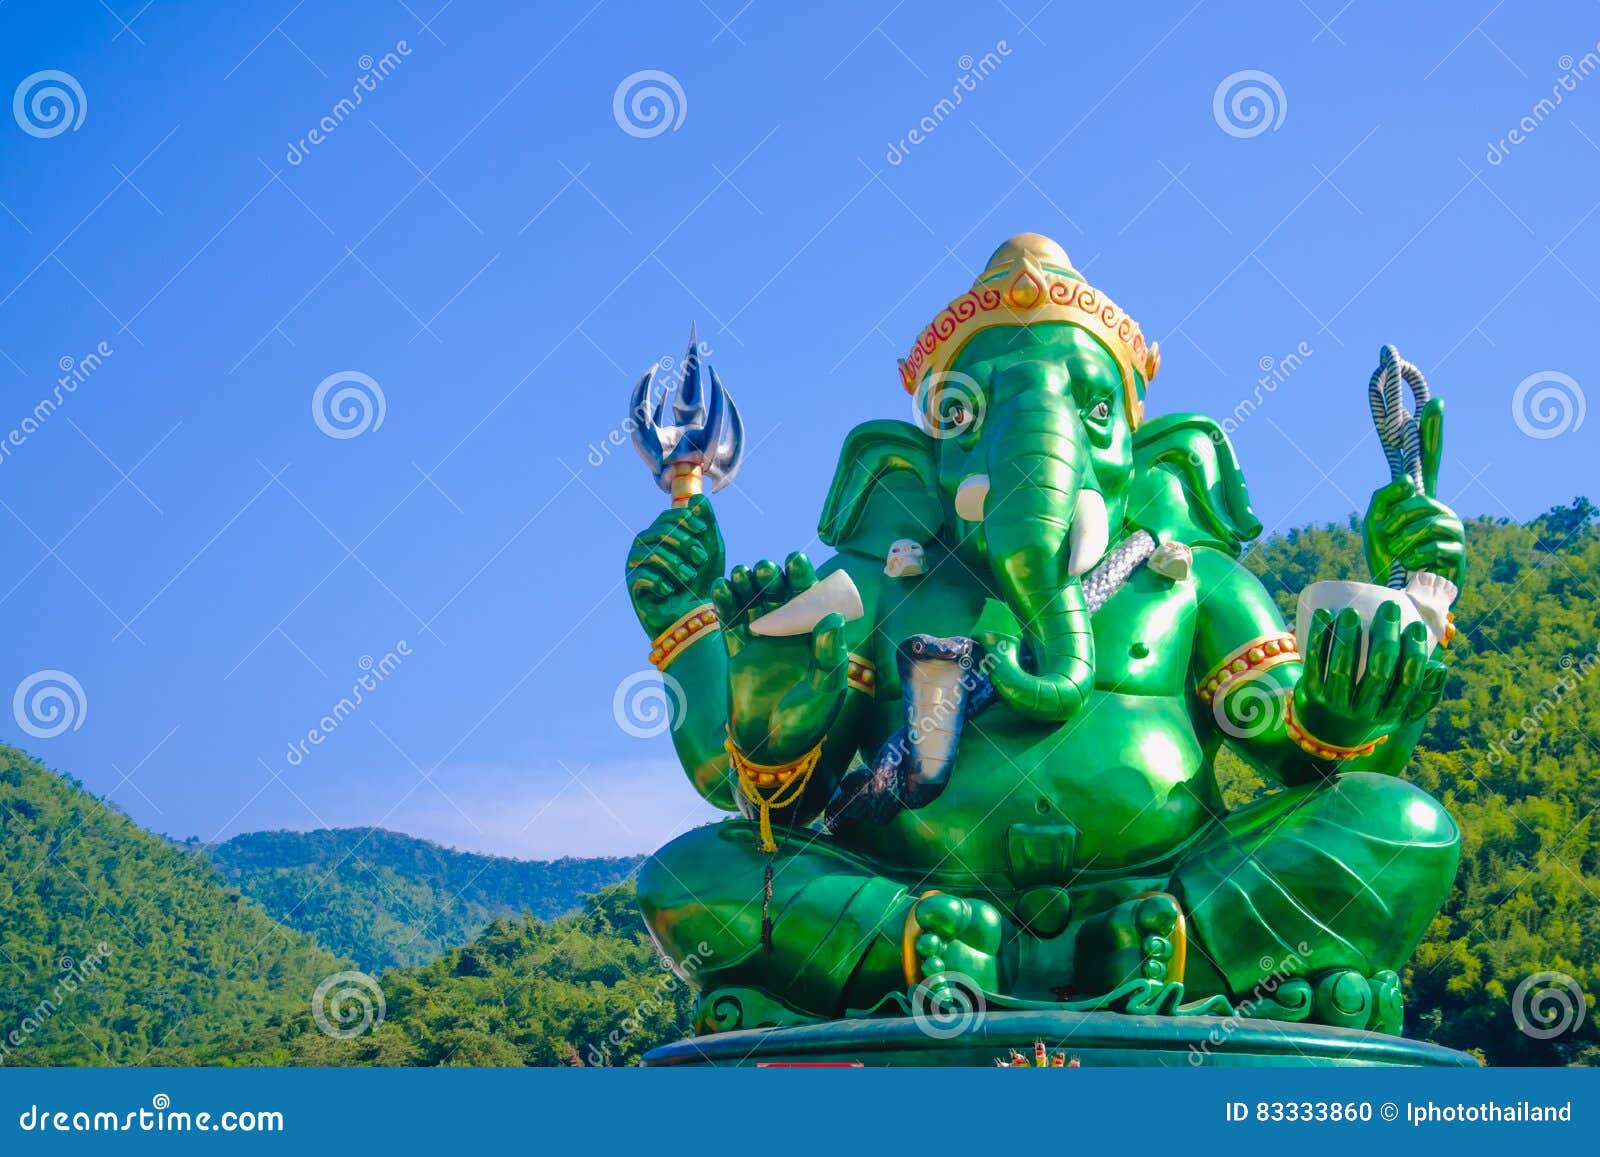 Green Big Ganesha Hindu God Statue. Stock Photo - Image of head ...